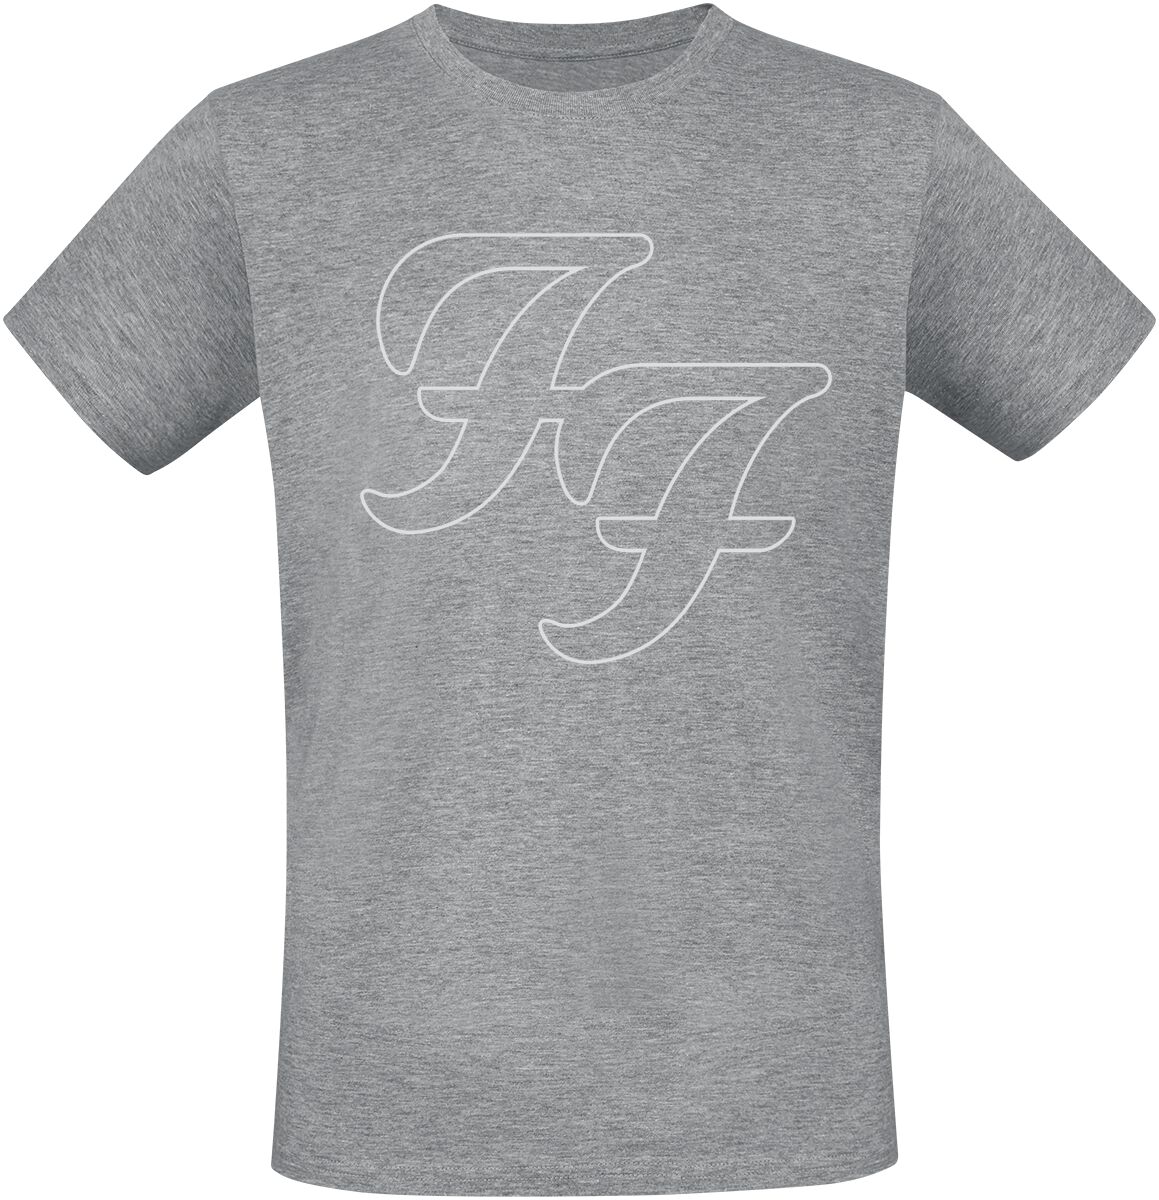 Foo Fighters T-Shirt - But Here We Are - S bis 3XL - für Männer - Größe 3XL - grau meliert  - Lizenziertes Merchandise!